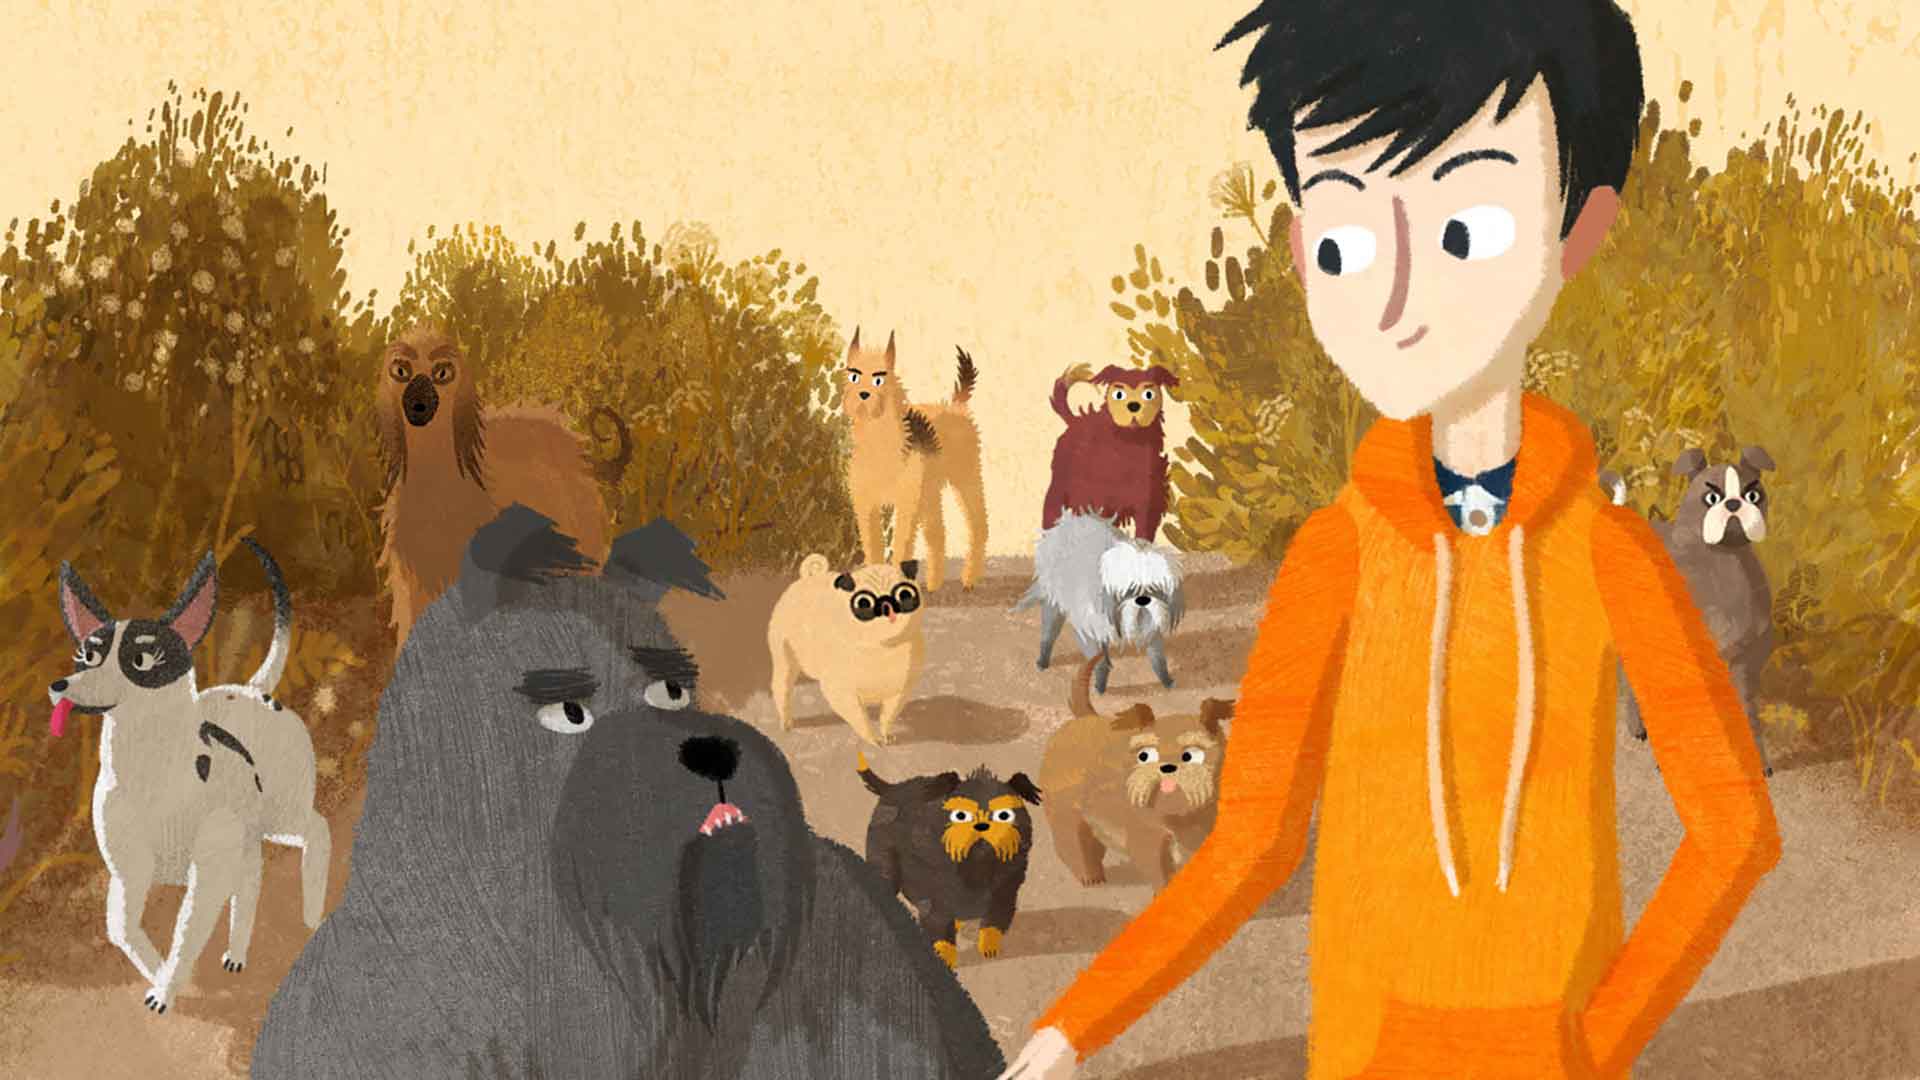 Dessin d'animation d'un jeune garçon discutant avec un chien